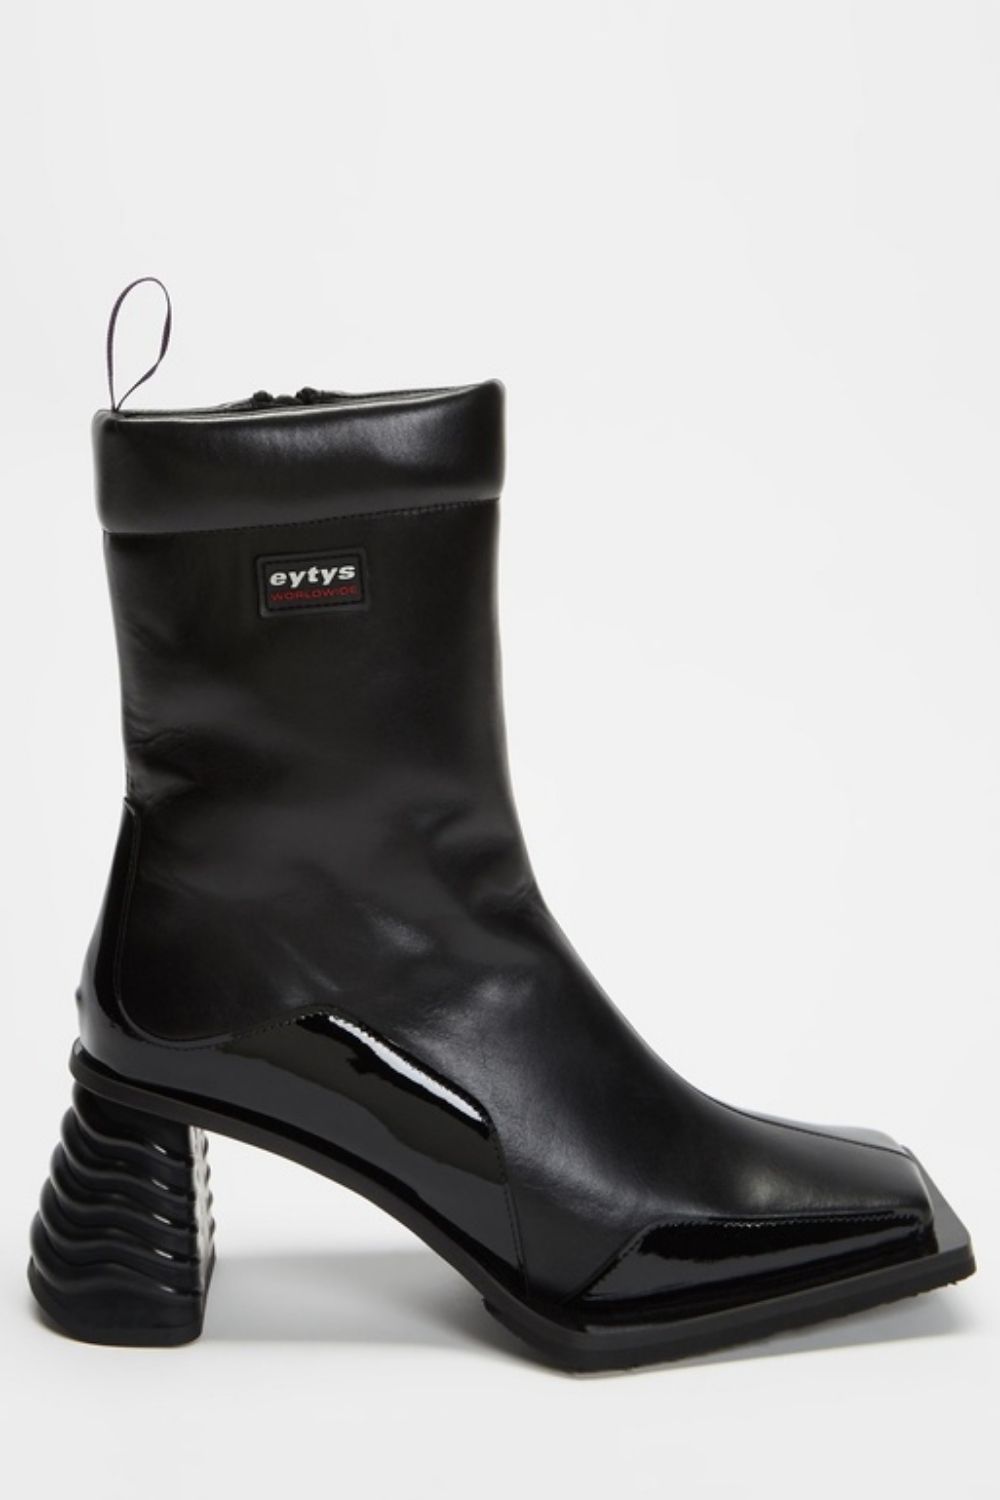 designer-affordable-boots